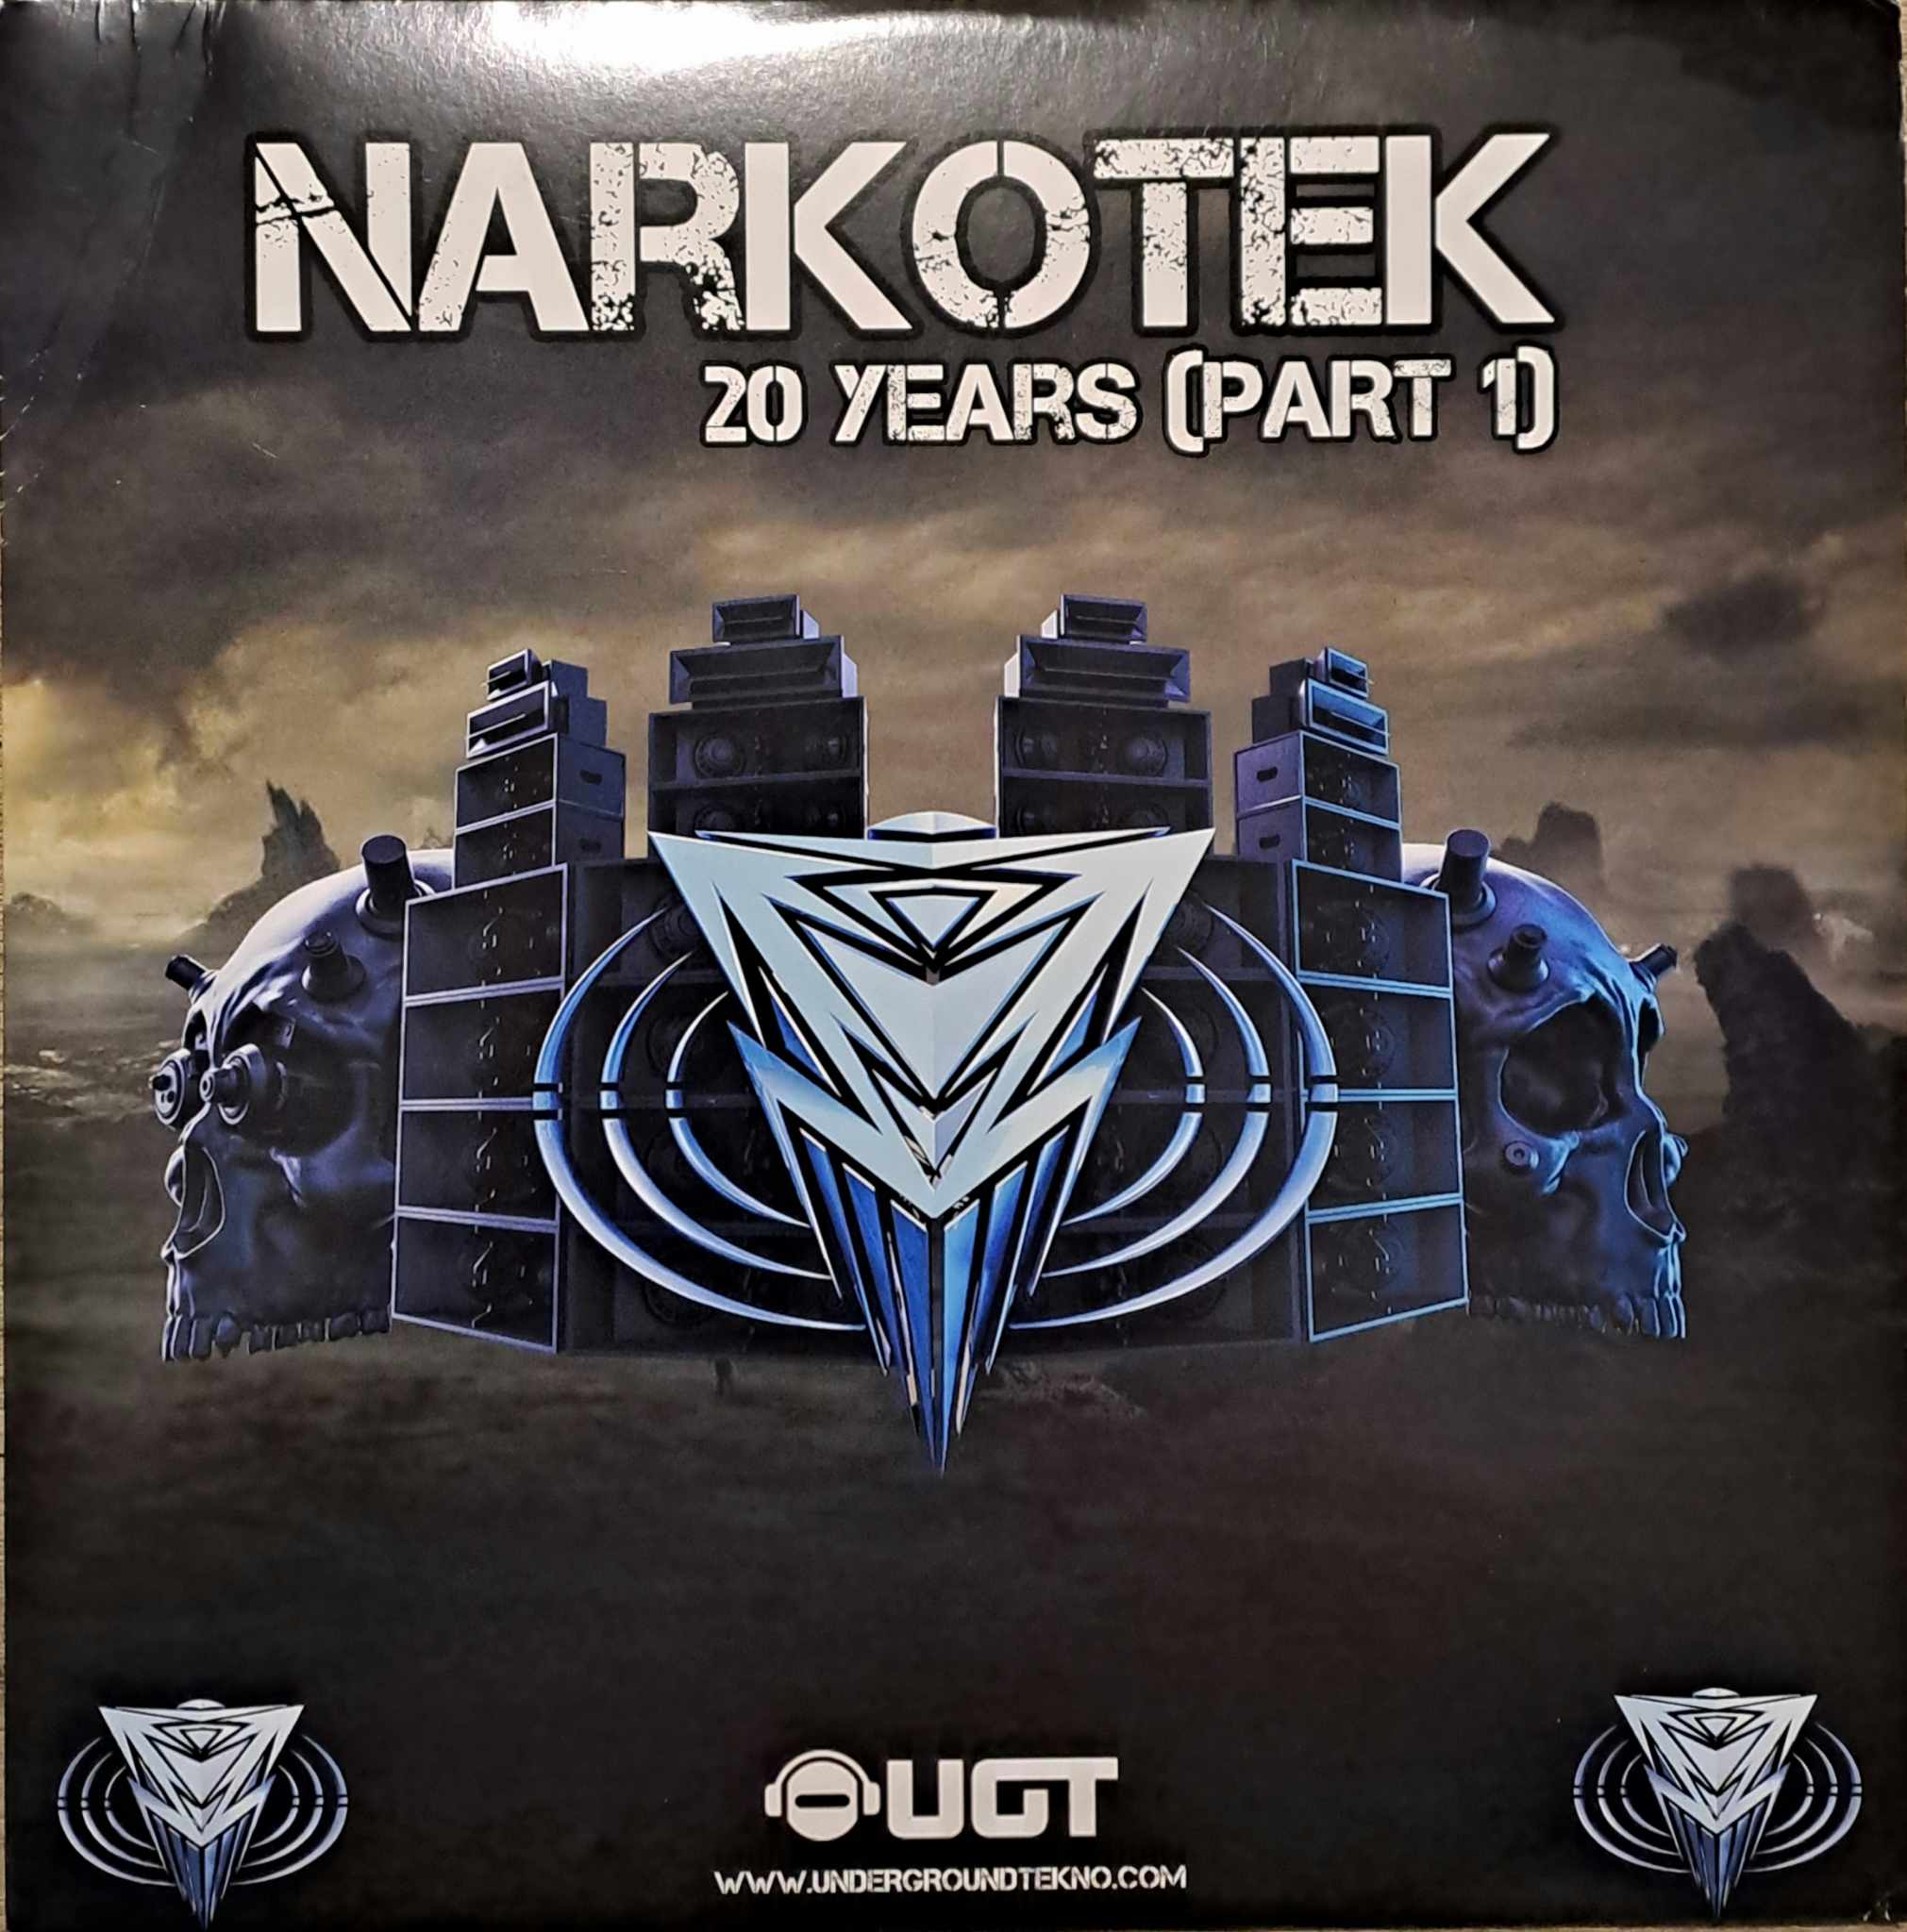 Narkotek 20 Years Part 1 - vinyle freetekno